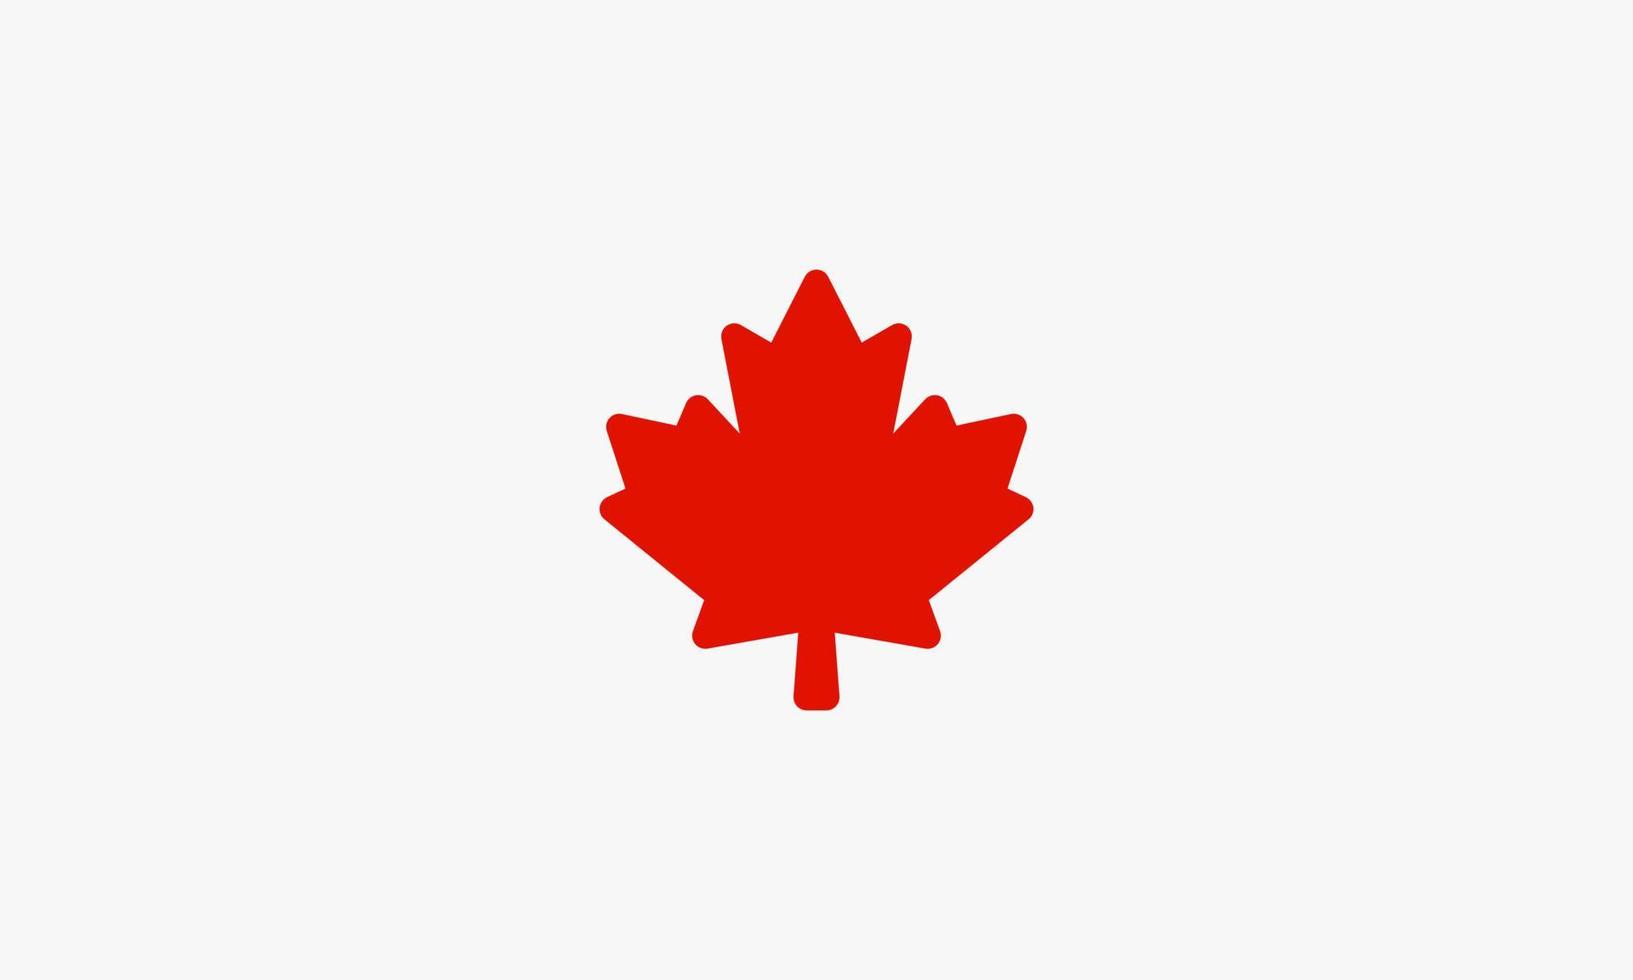 foglia d'acero rossa. simbolo del Canada. illustrazione vettoriale. vettore